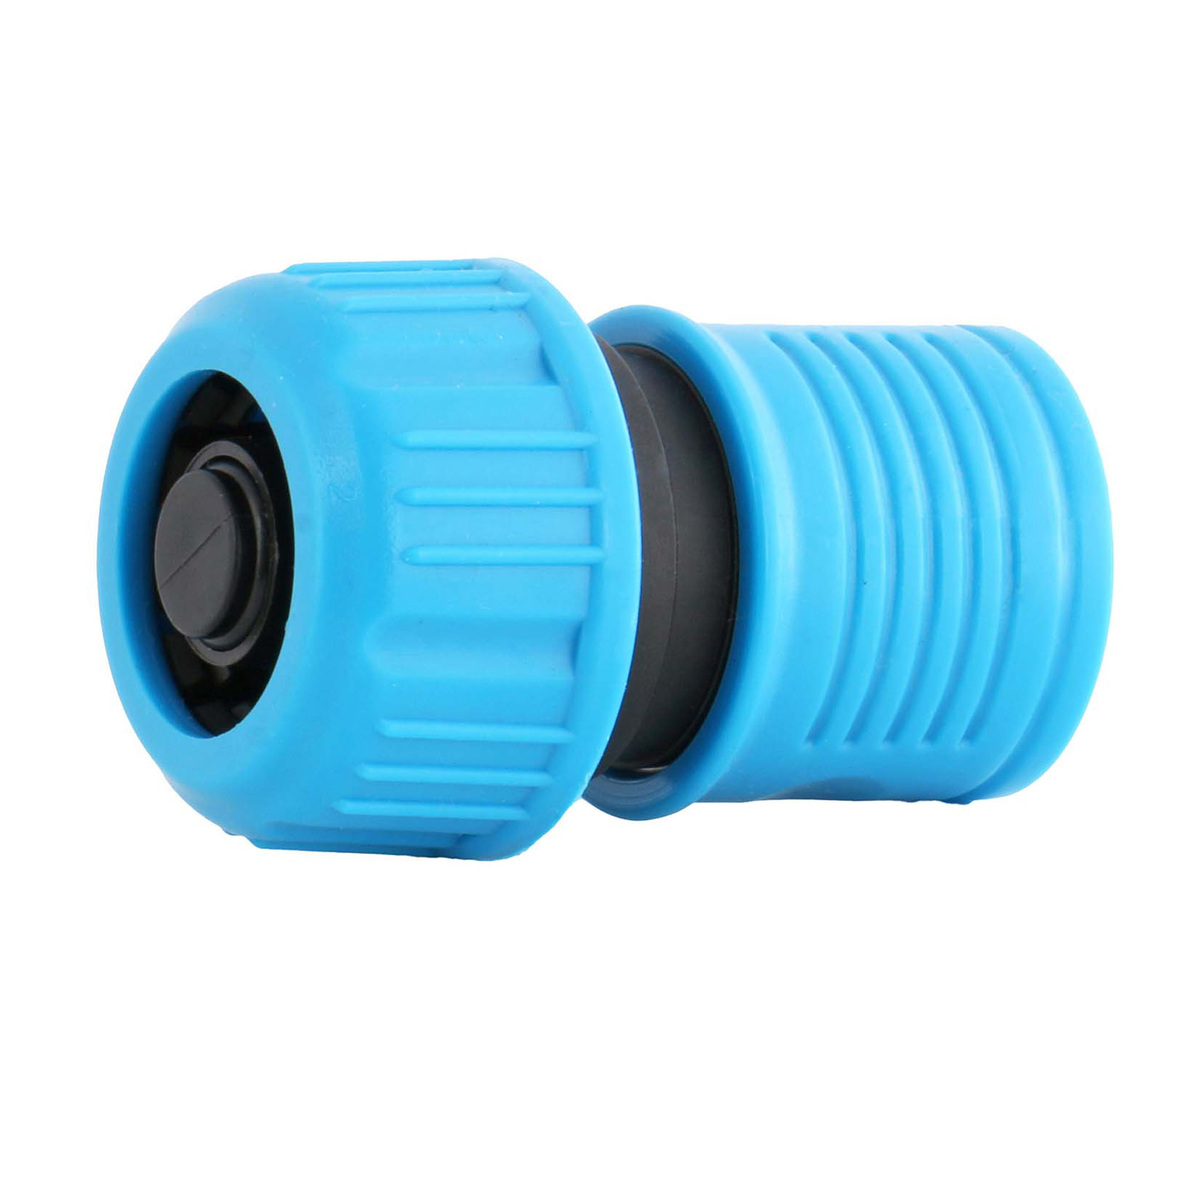 Aqua Craft Hose Nozzle Set, 1/2 inches, 4 Pcs, Blue/Grey/Black, 27604